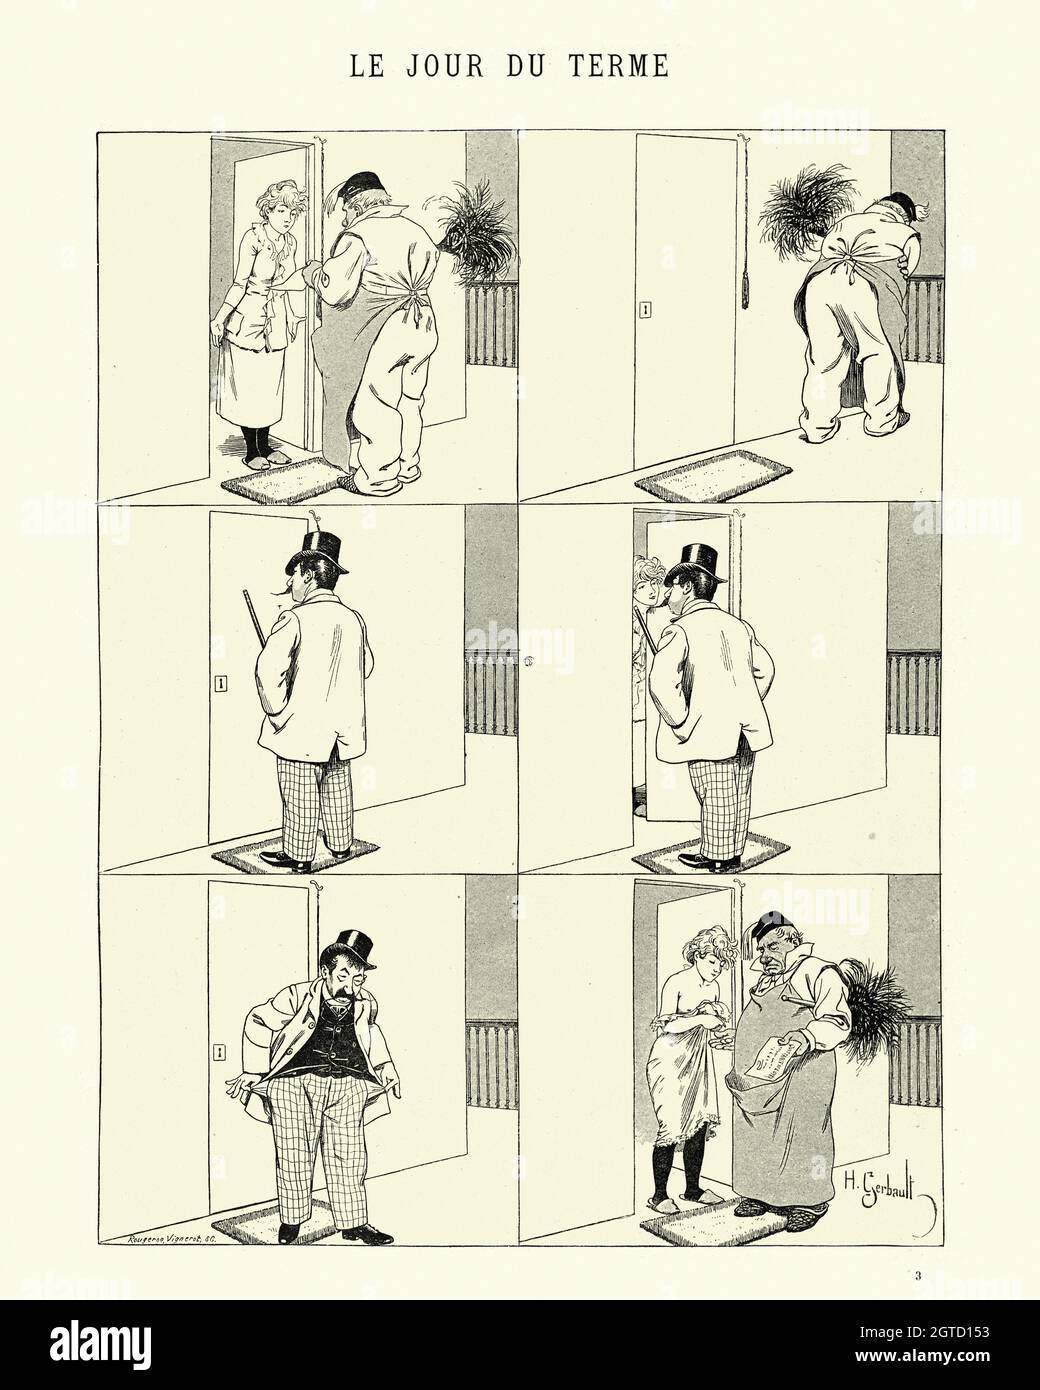 Illustrazione d'epoca di un fumetto francese di Henry Gerbault. Le jour du terme (il giorno del termine), giovane donna a corto di affitto denaro il quarto giorno Foto Stock